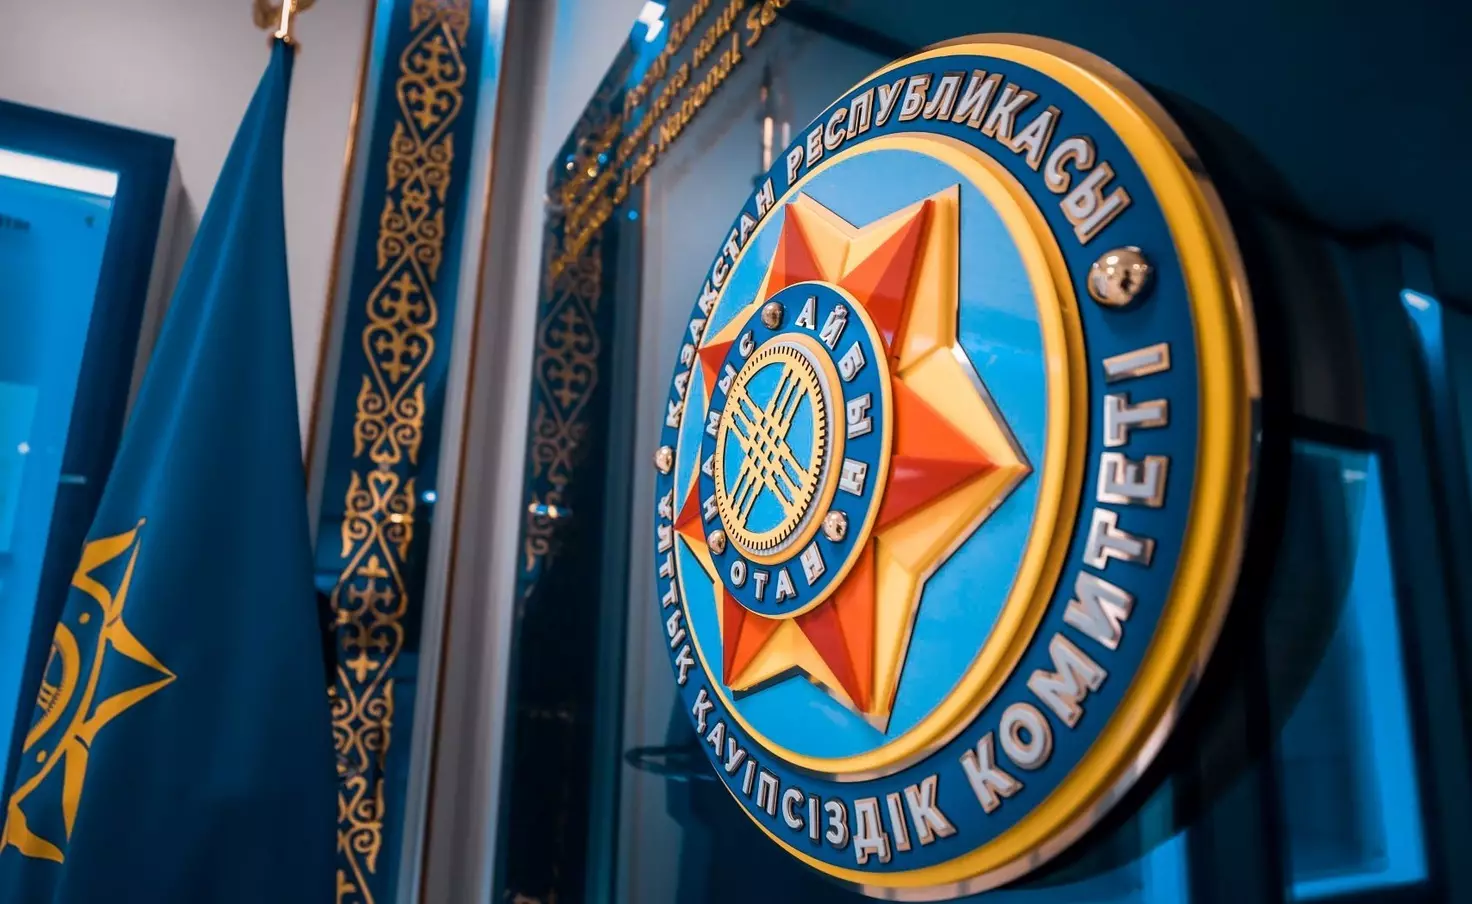 Информация о якобы угрозе теракта в отношении «западной цели» в Казахстане не подтвердилась